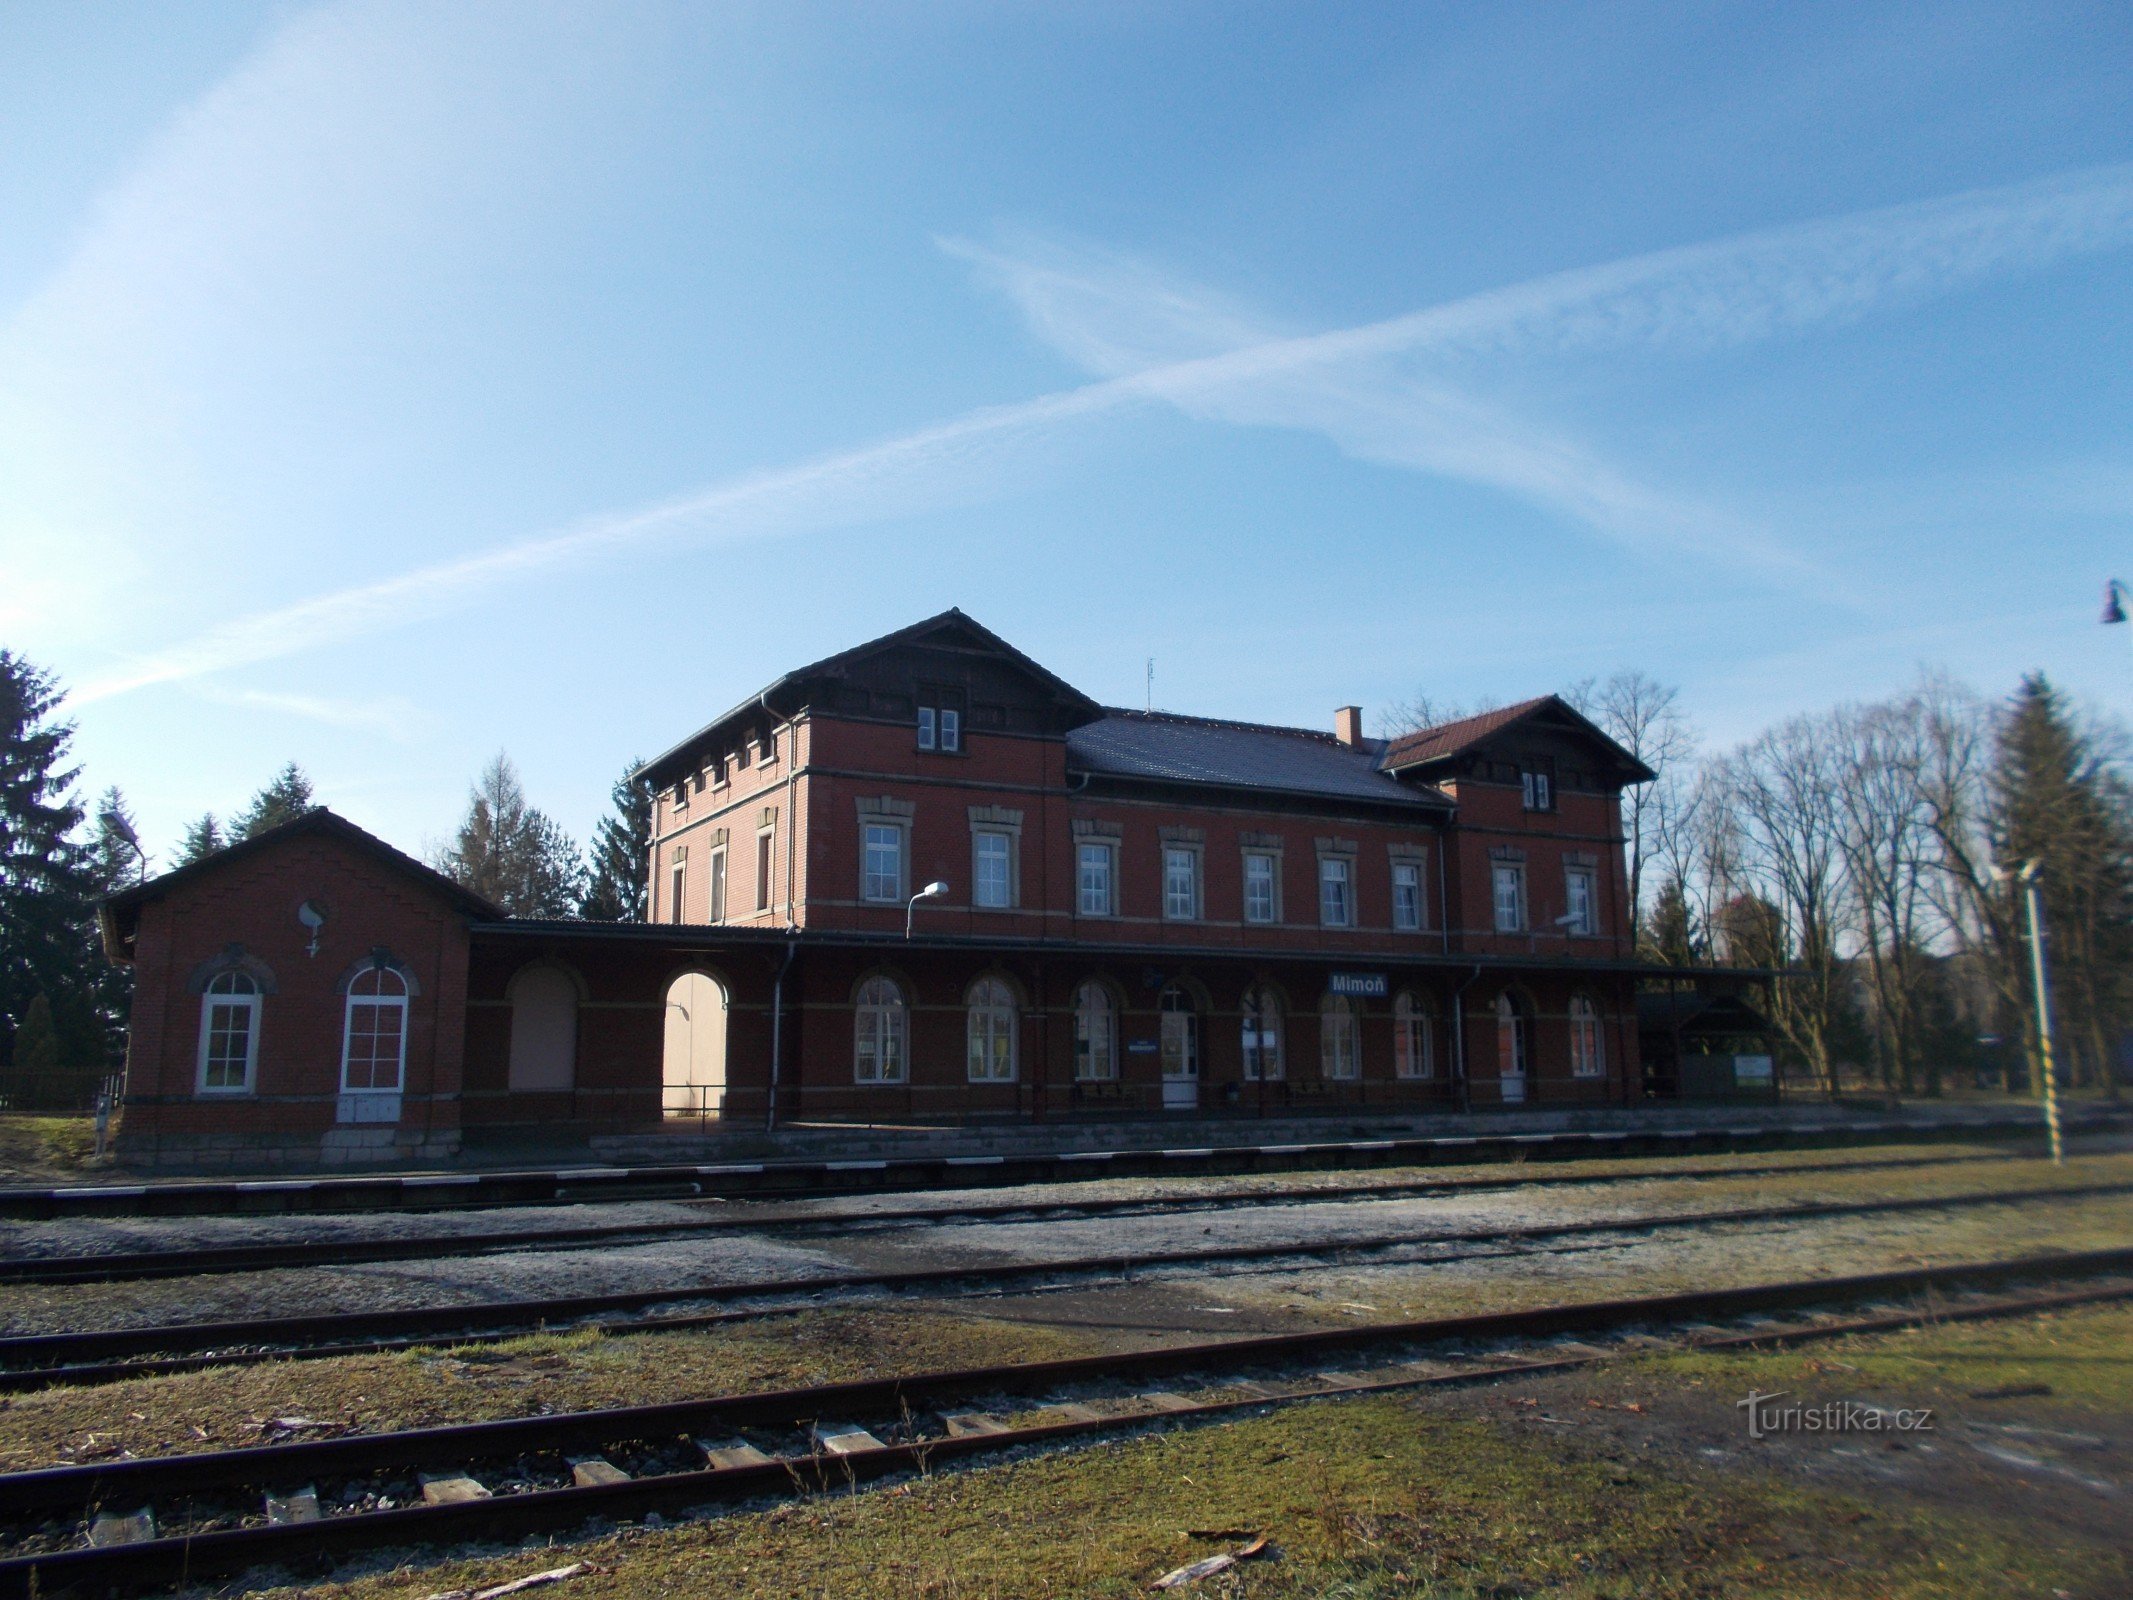 Stazione ferroviaria di Mimonské